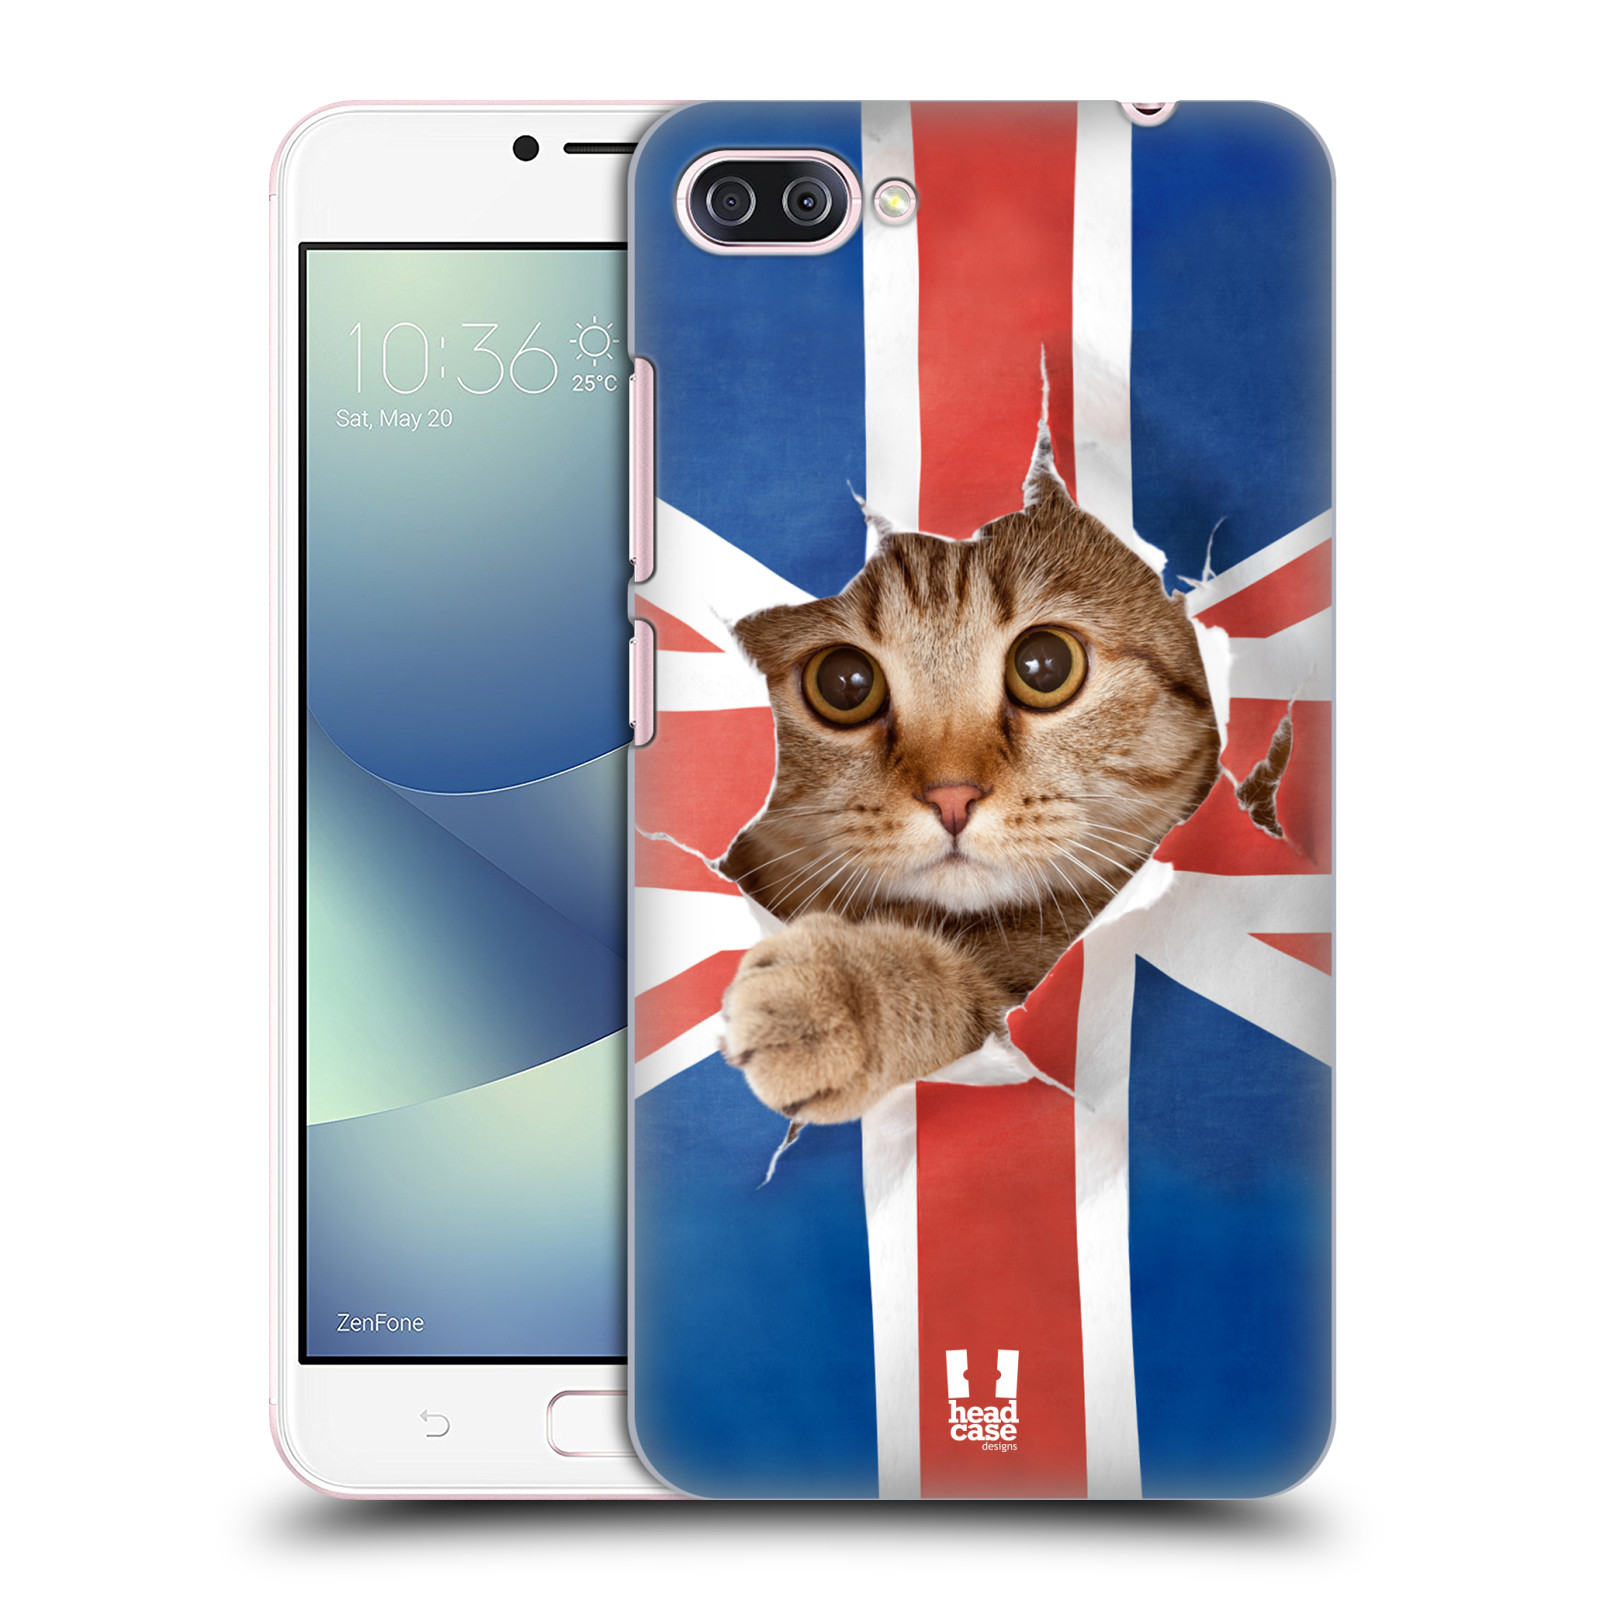 HEAD CASE plastový obal na mobil Asus Zenfone 4 MAX ZC554KL vzor Legrační zvířátka kočička a Velká Británie vlajka